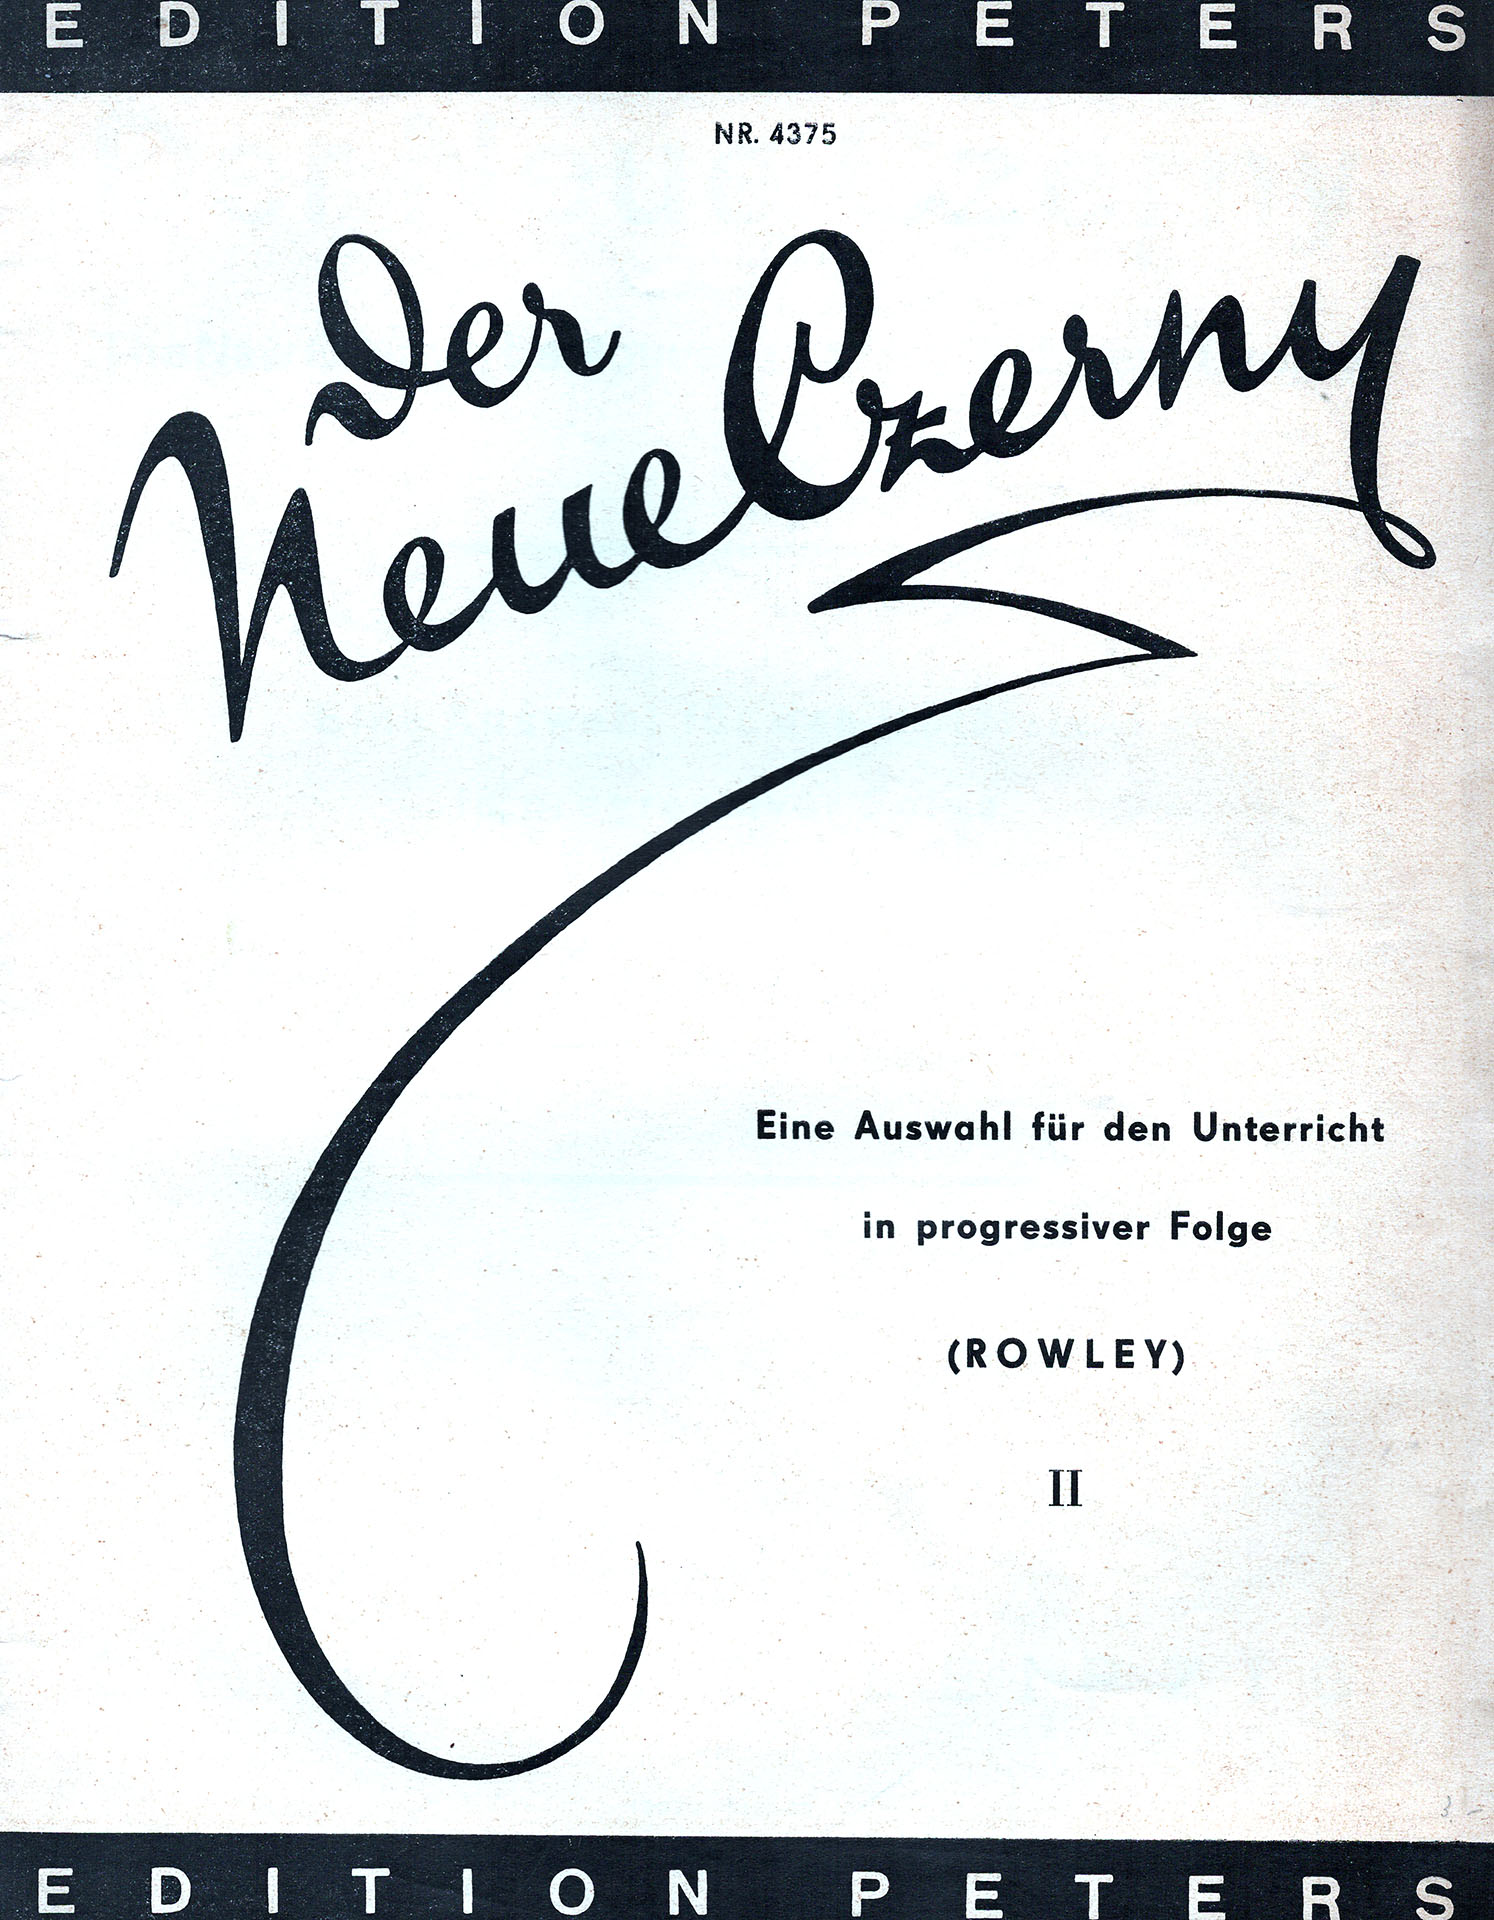 Der neue Czerny - Rowley, A. / Haywood, E.